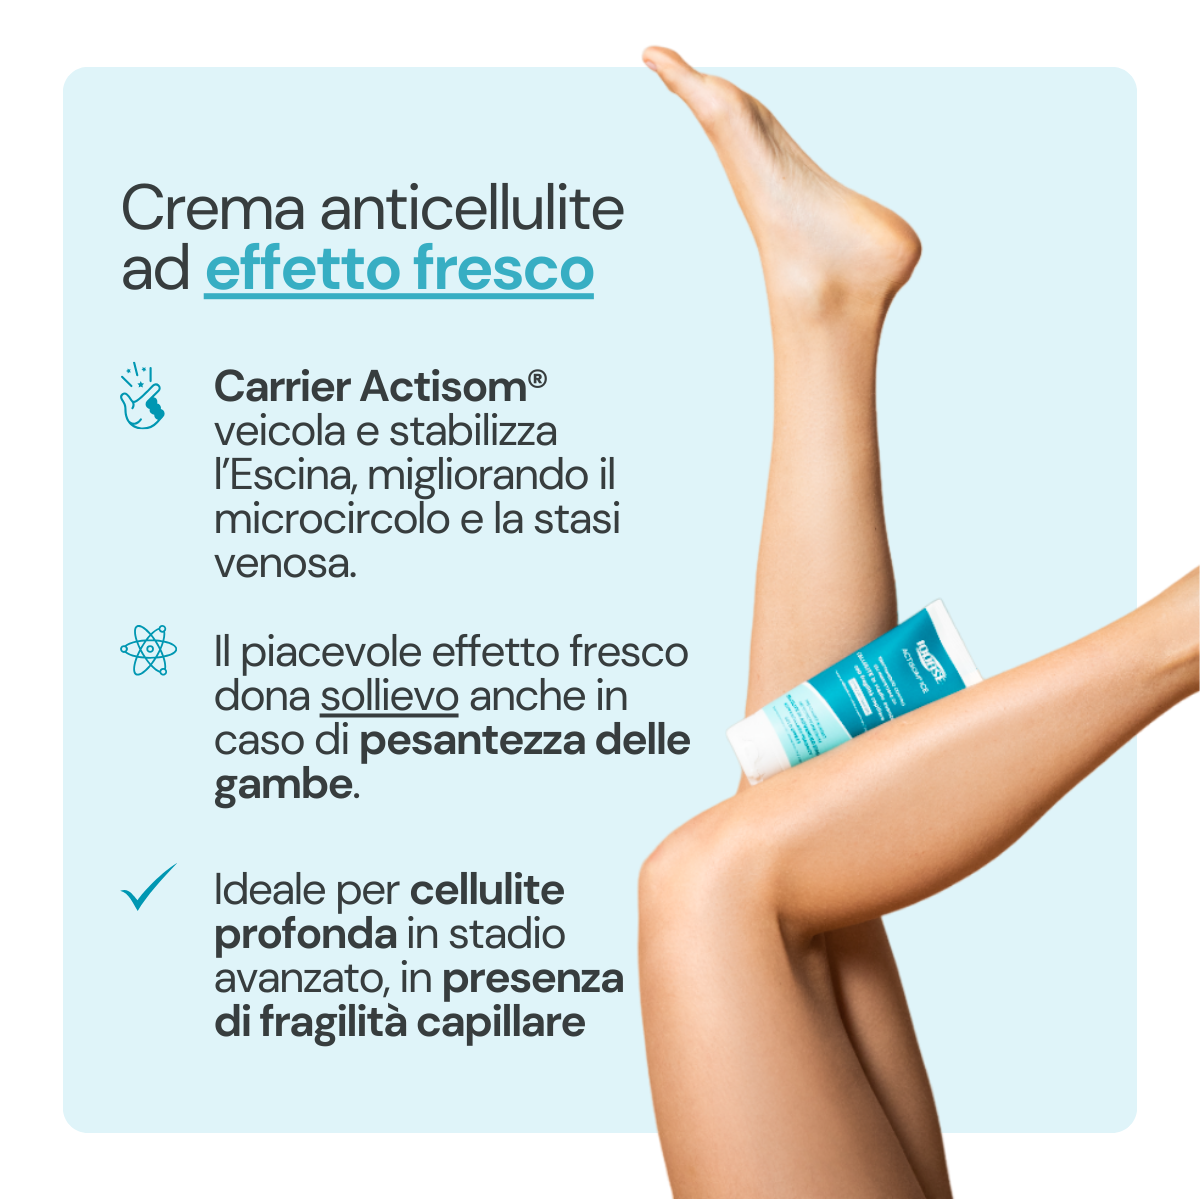 Cellulite cream for fragile capillaries